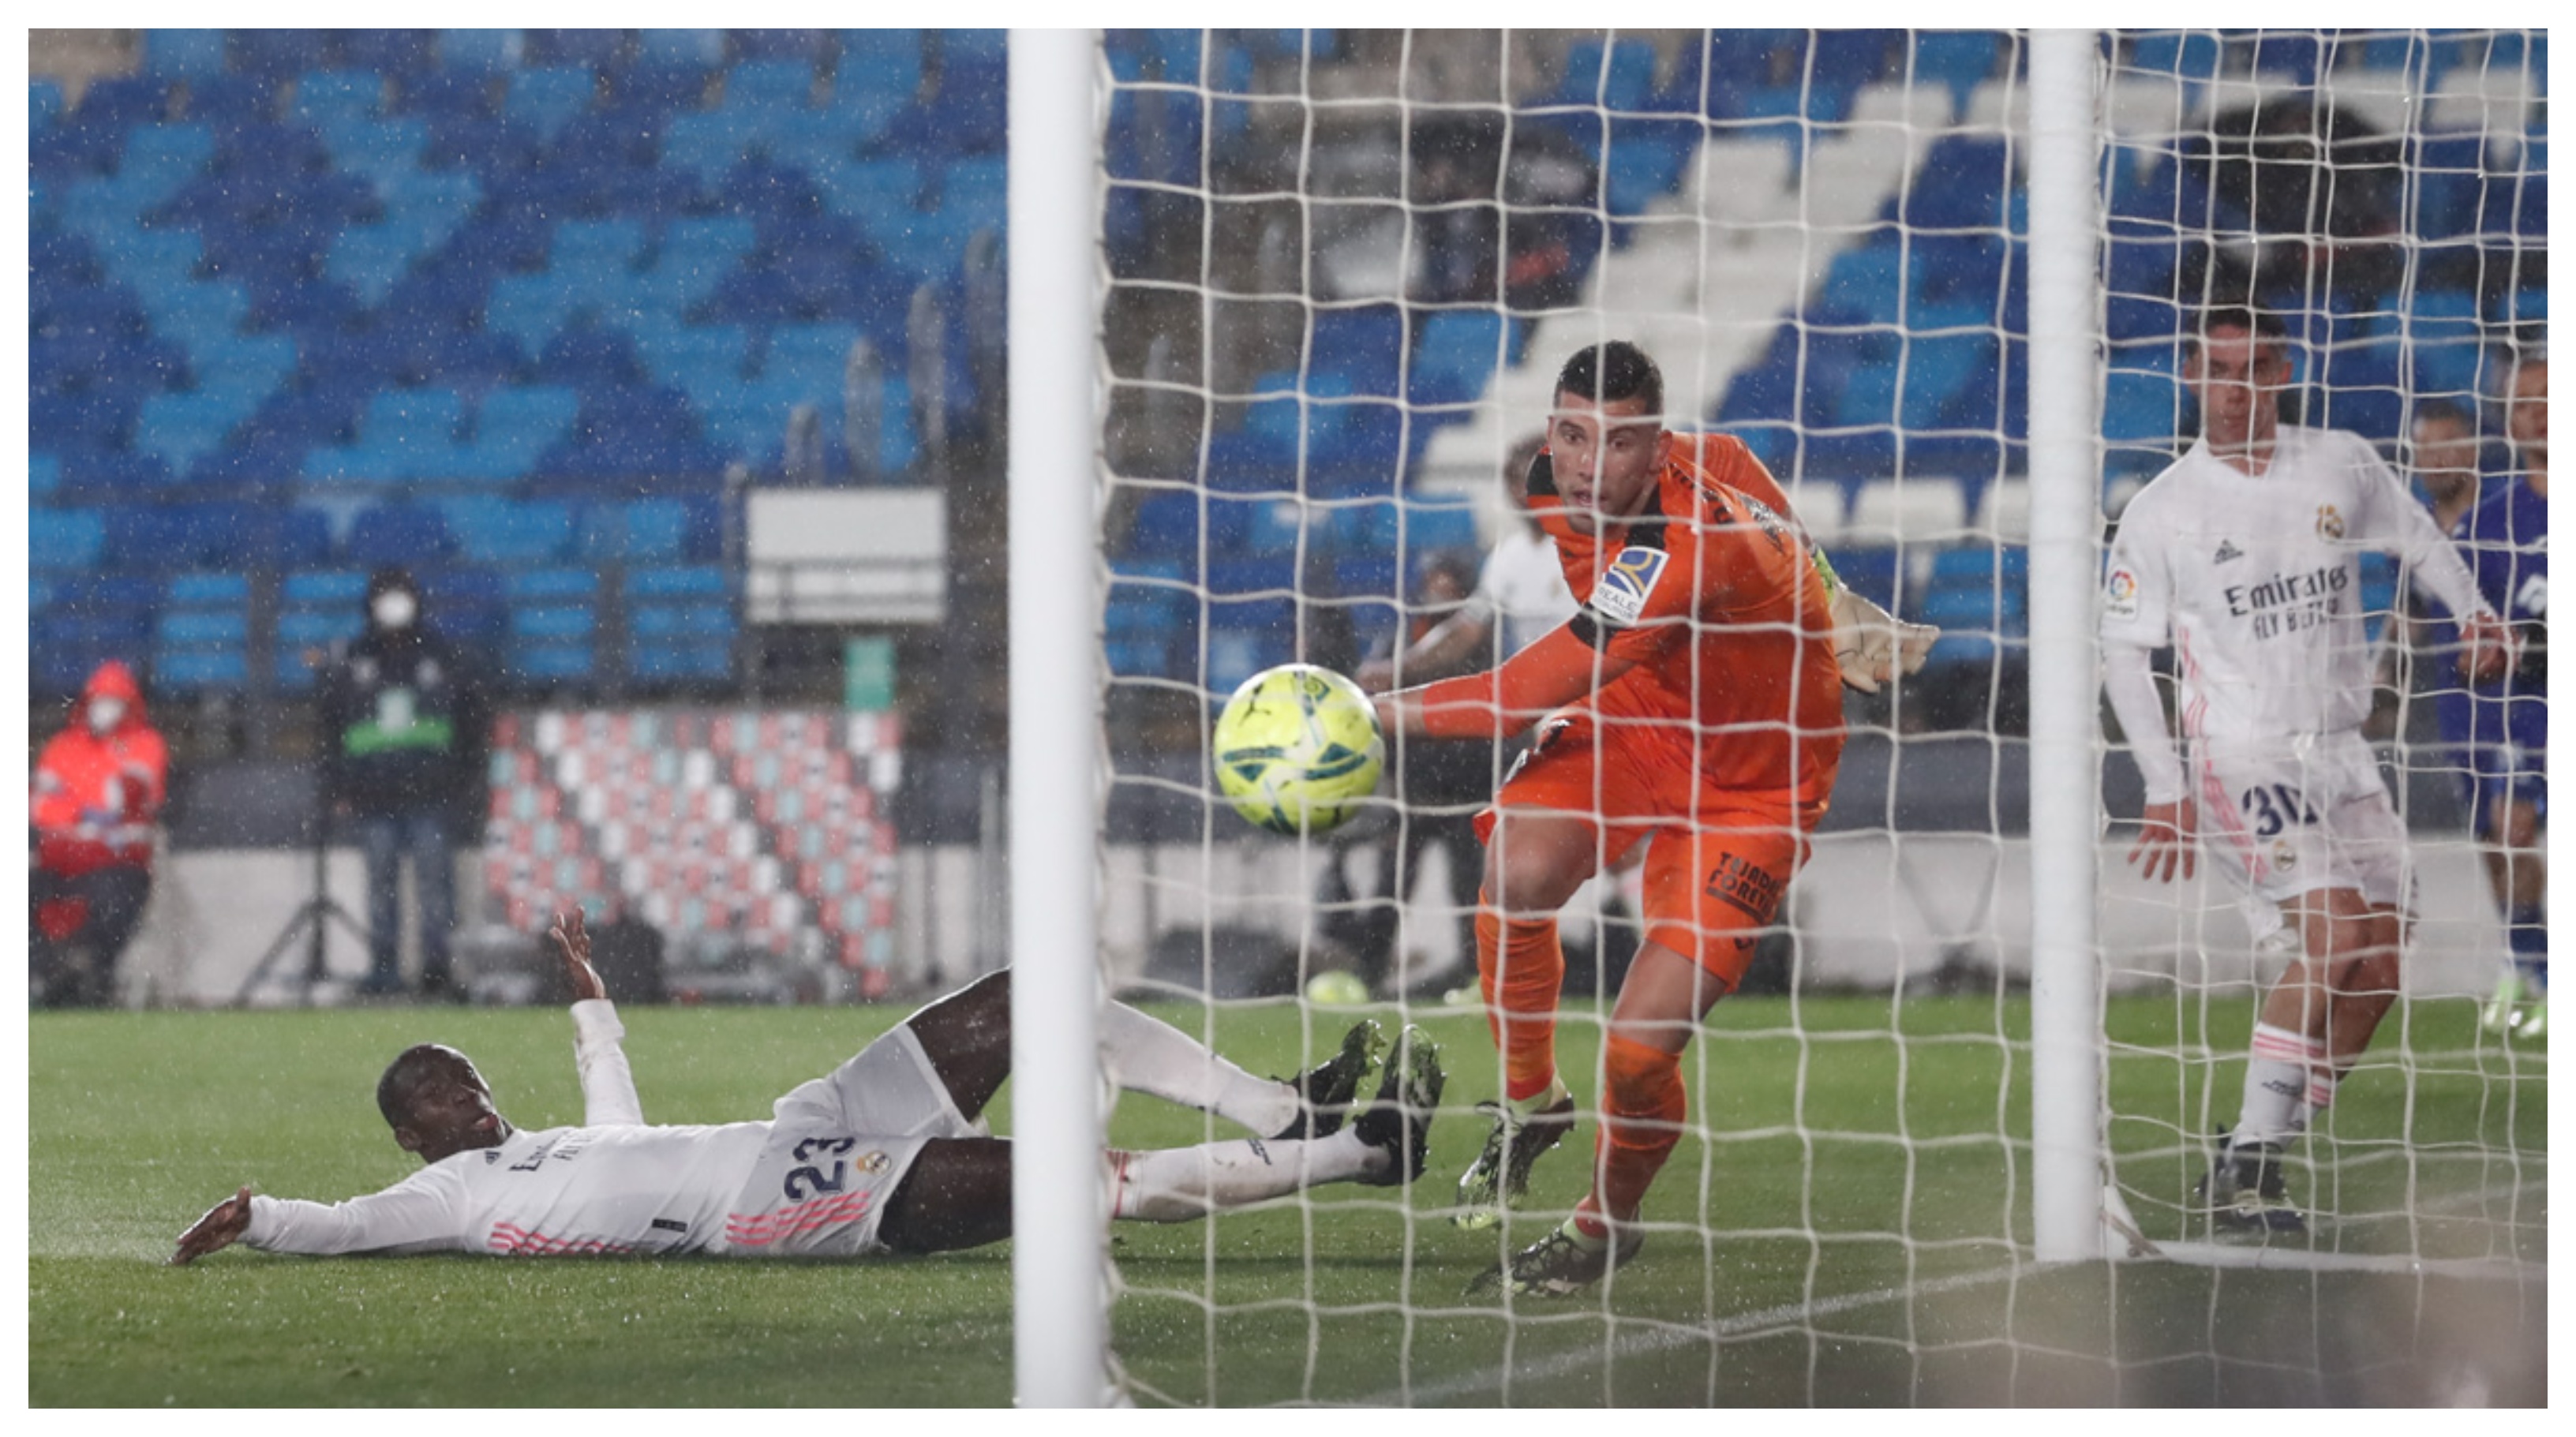 Este fue el momento en que Mendy anotó el segundo gol del Real Madrid. Aprovechó un pase de Marcelo. Foto Prensa Libre: @realmadrid
